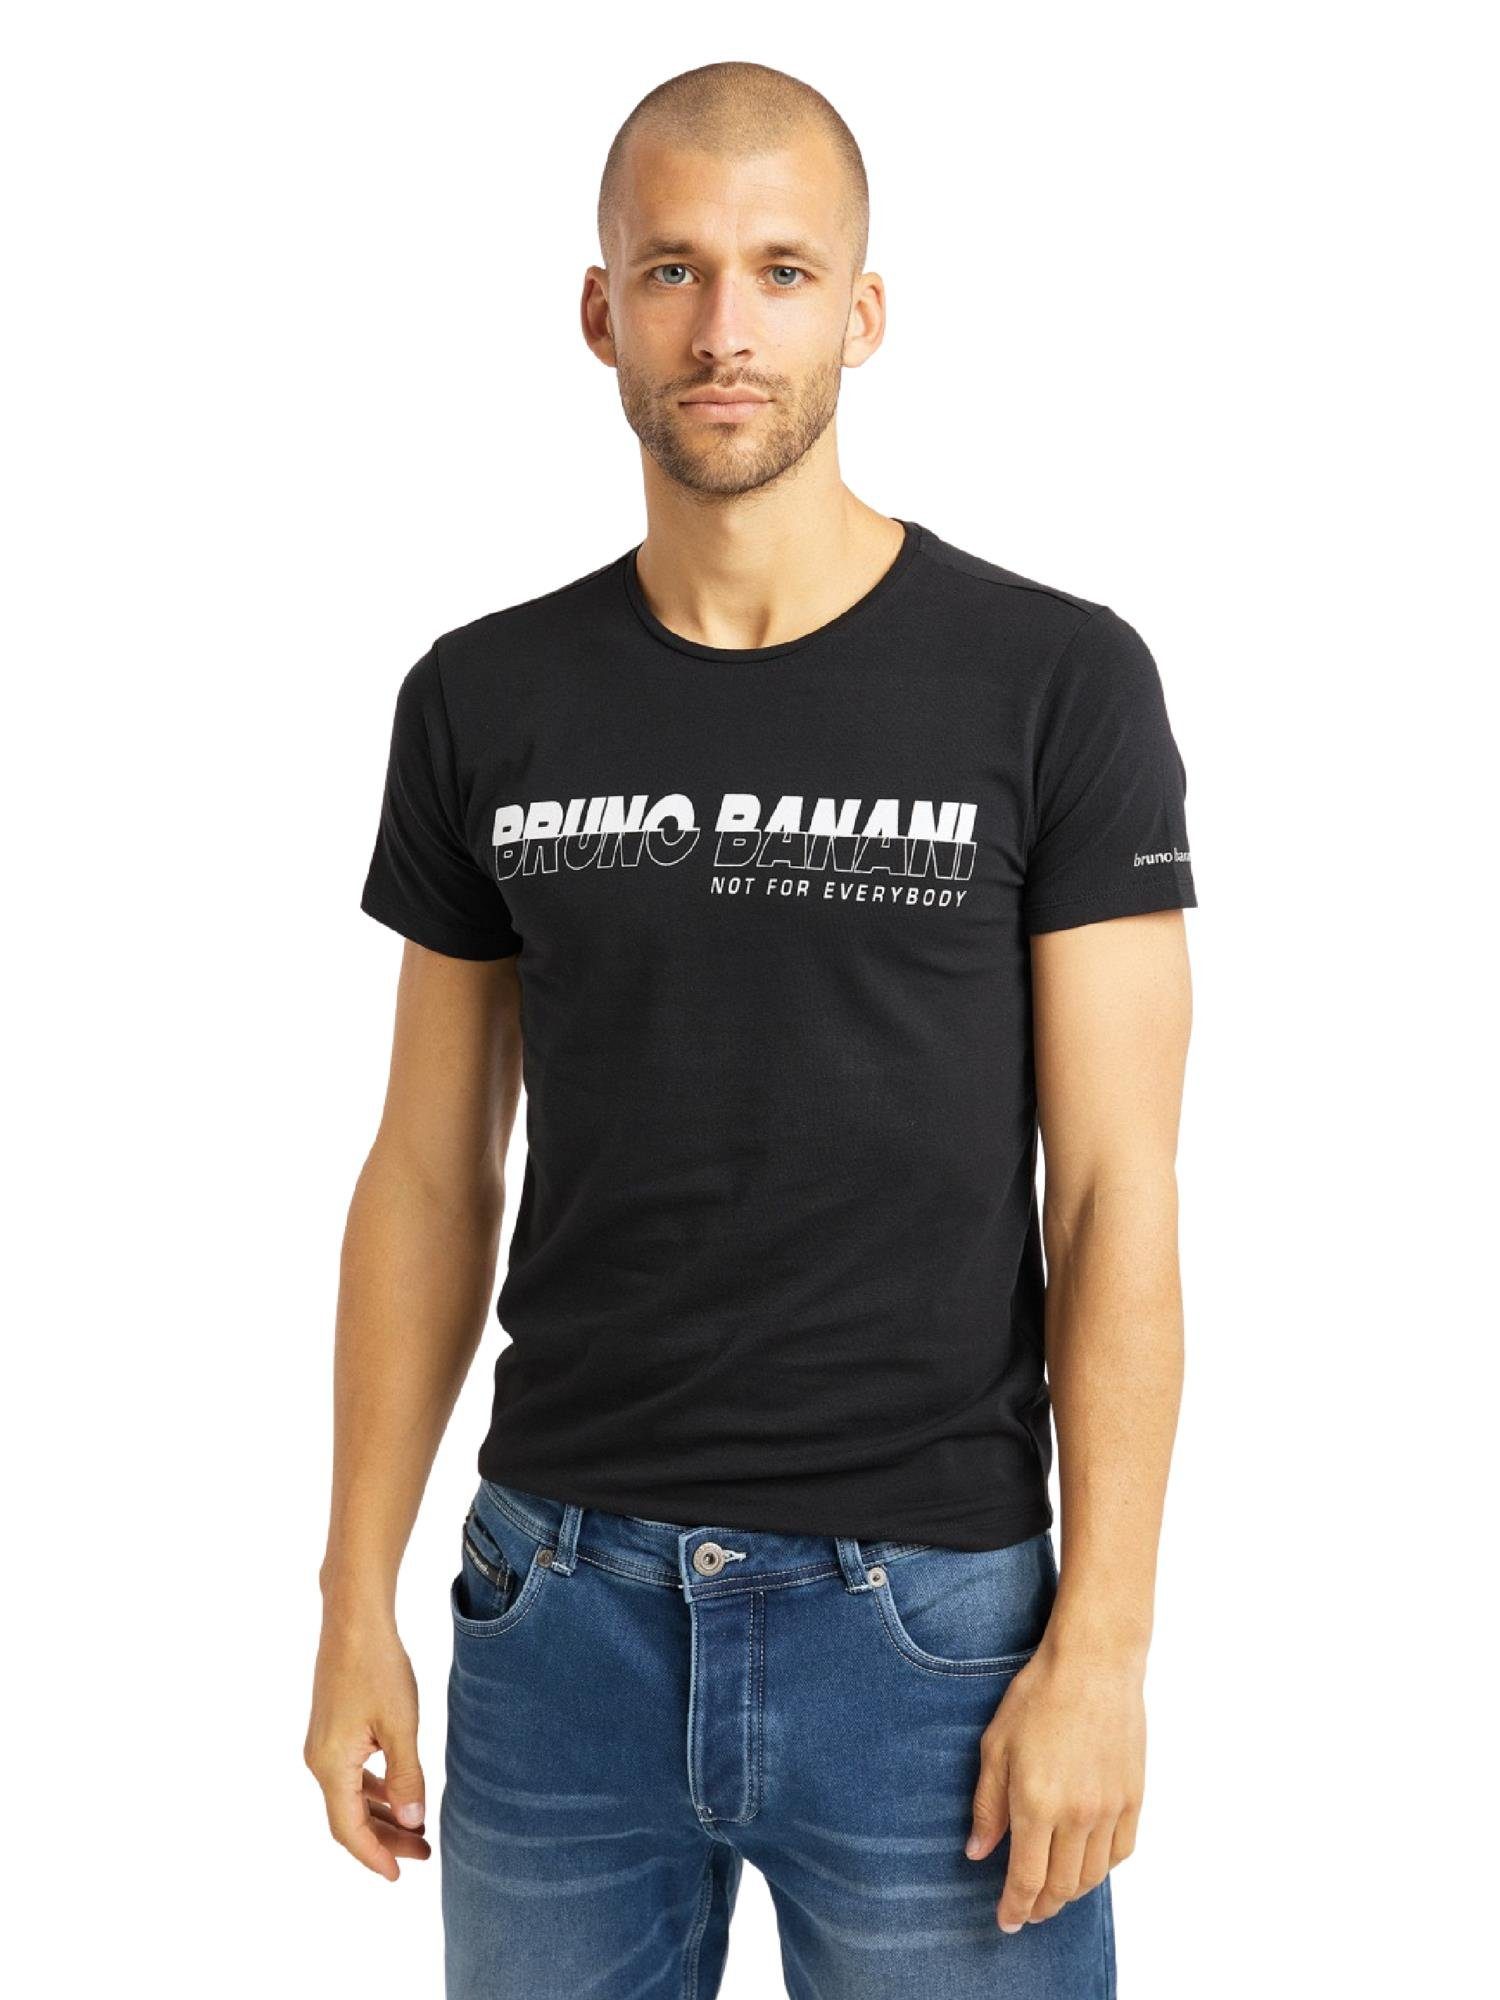 Bruno Banani Herren T-Shirts online kaufen | OTTO